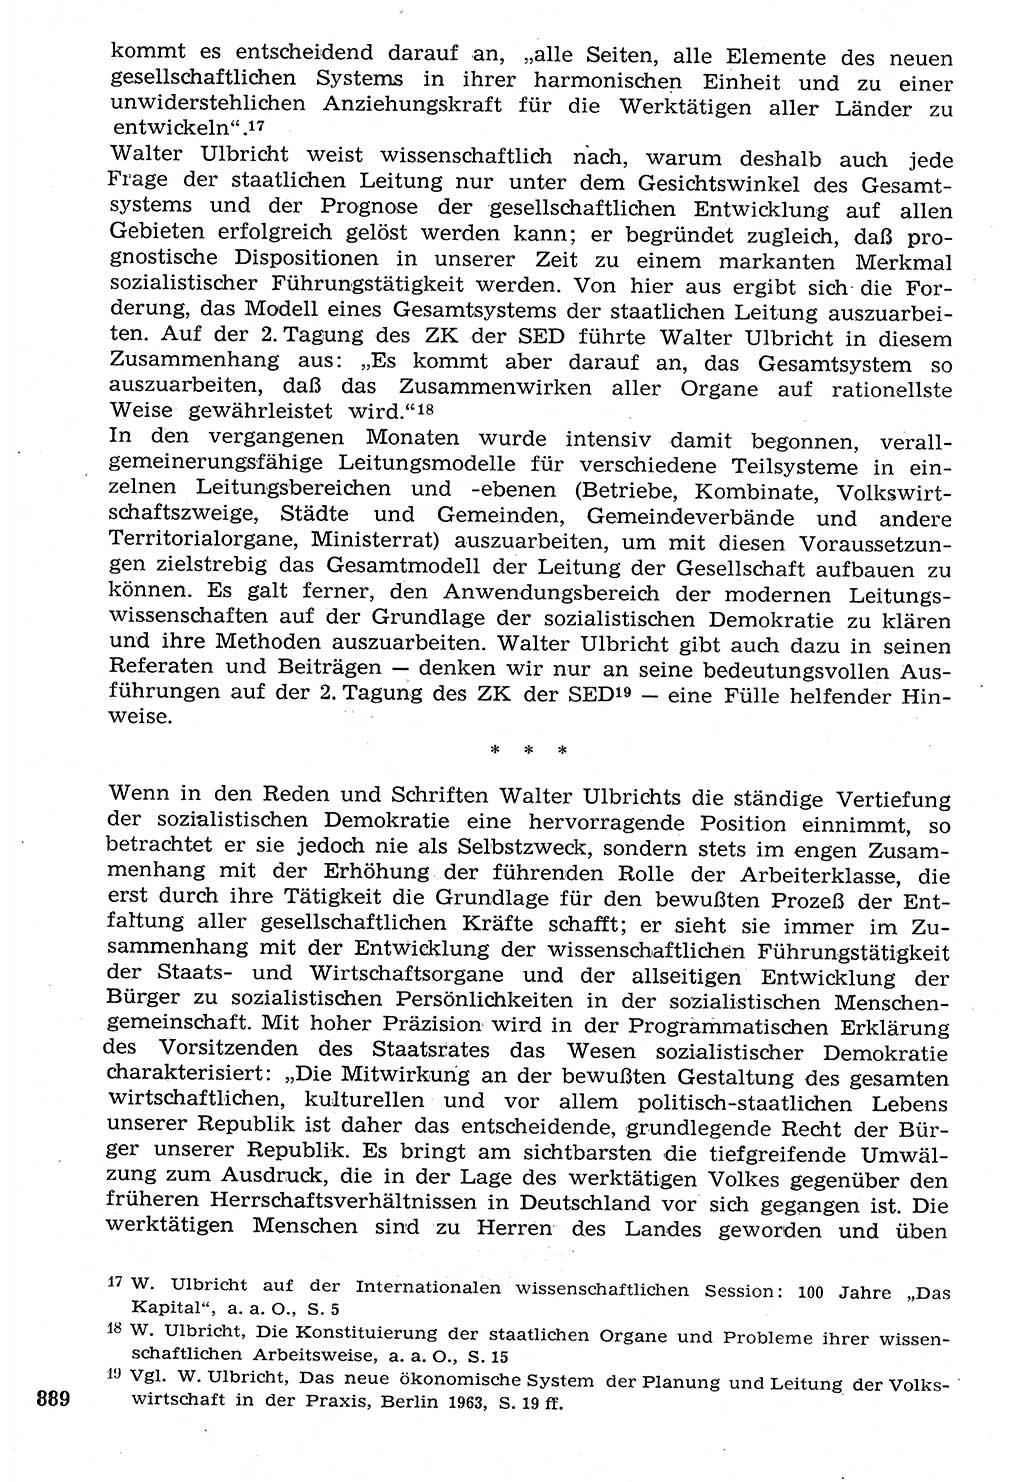 Staat und Recht (StuR), 17. Jahrgang [Deutsche Demokratische Republik (DDR)] 1968, Seite 889 (StuR DDR 1968, S. 889)